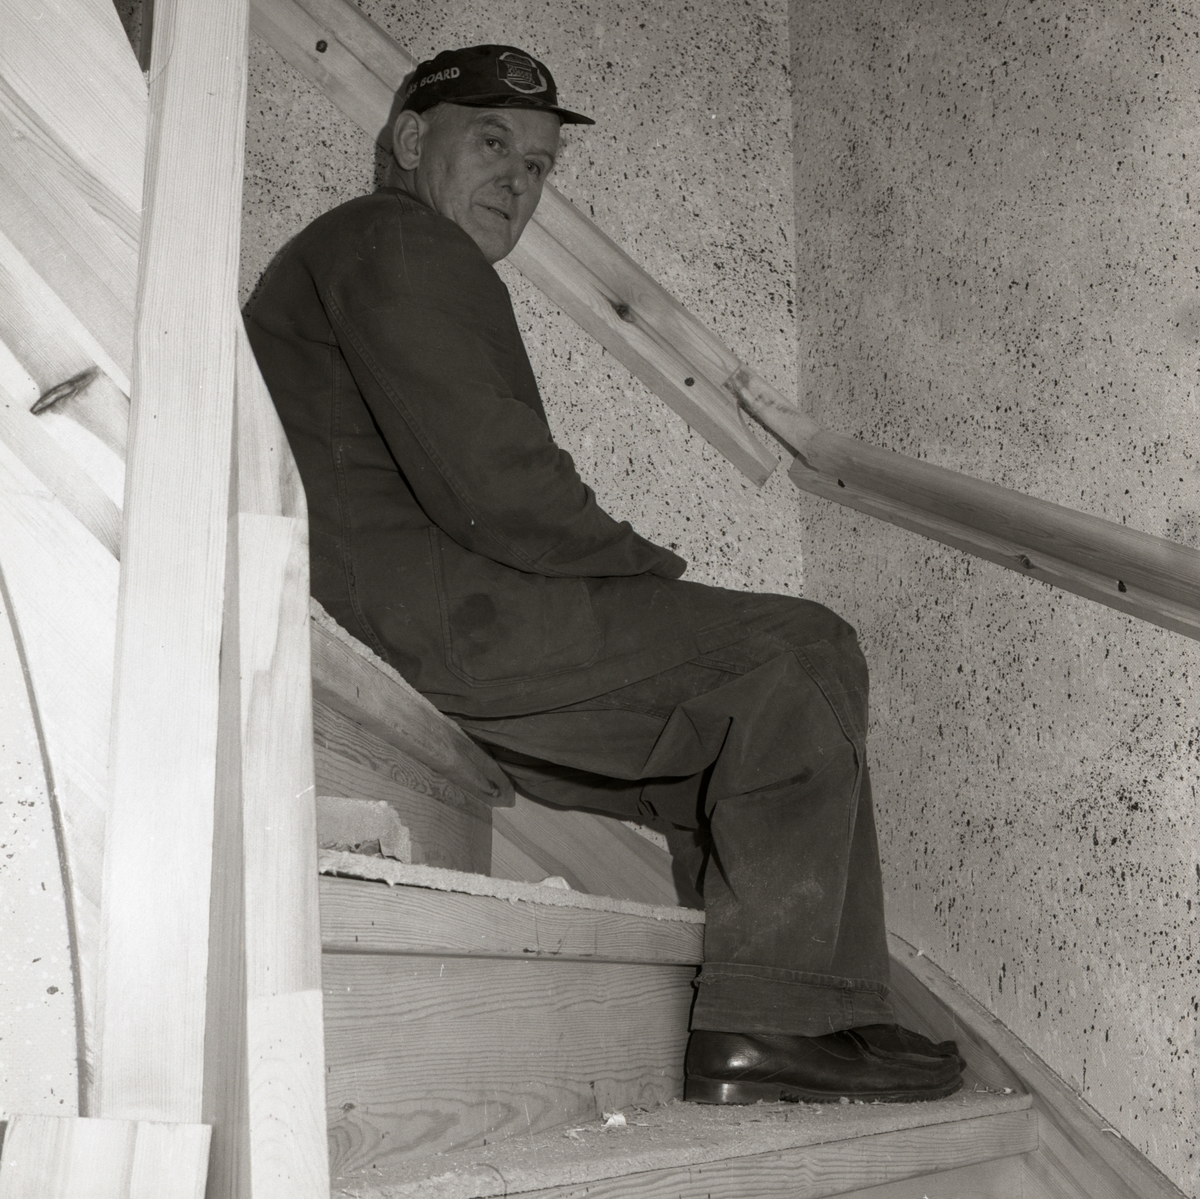 En man sitter i en trappa där väggarna är stänkmålade, 1967-68 vid gården Sunnanåker.